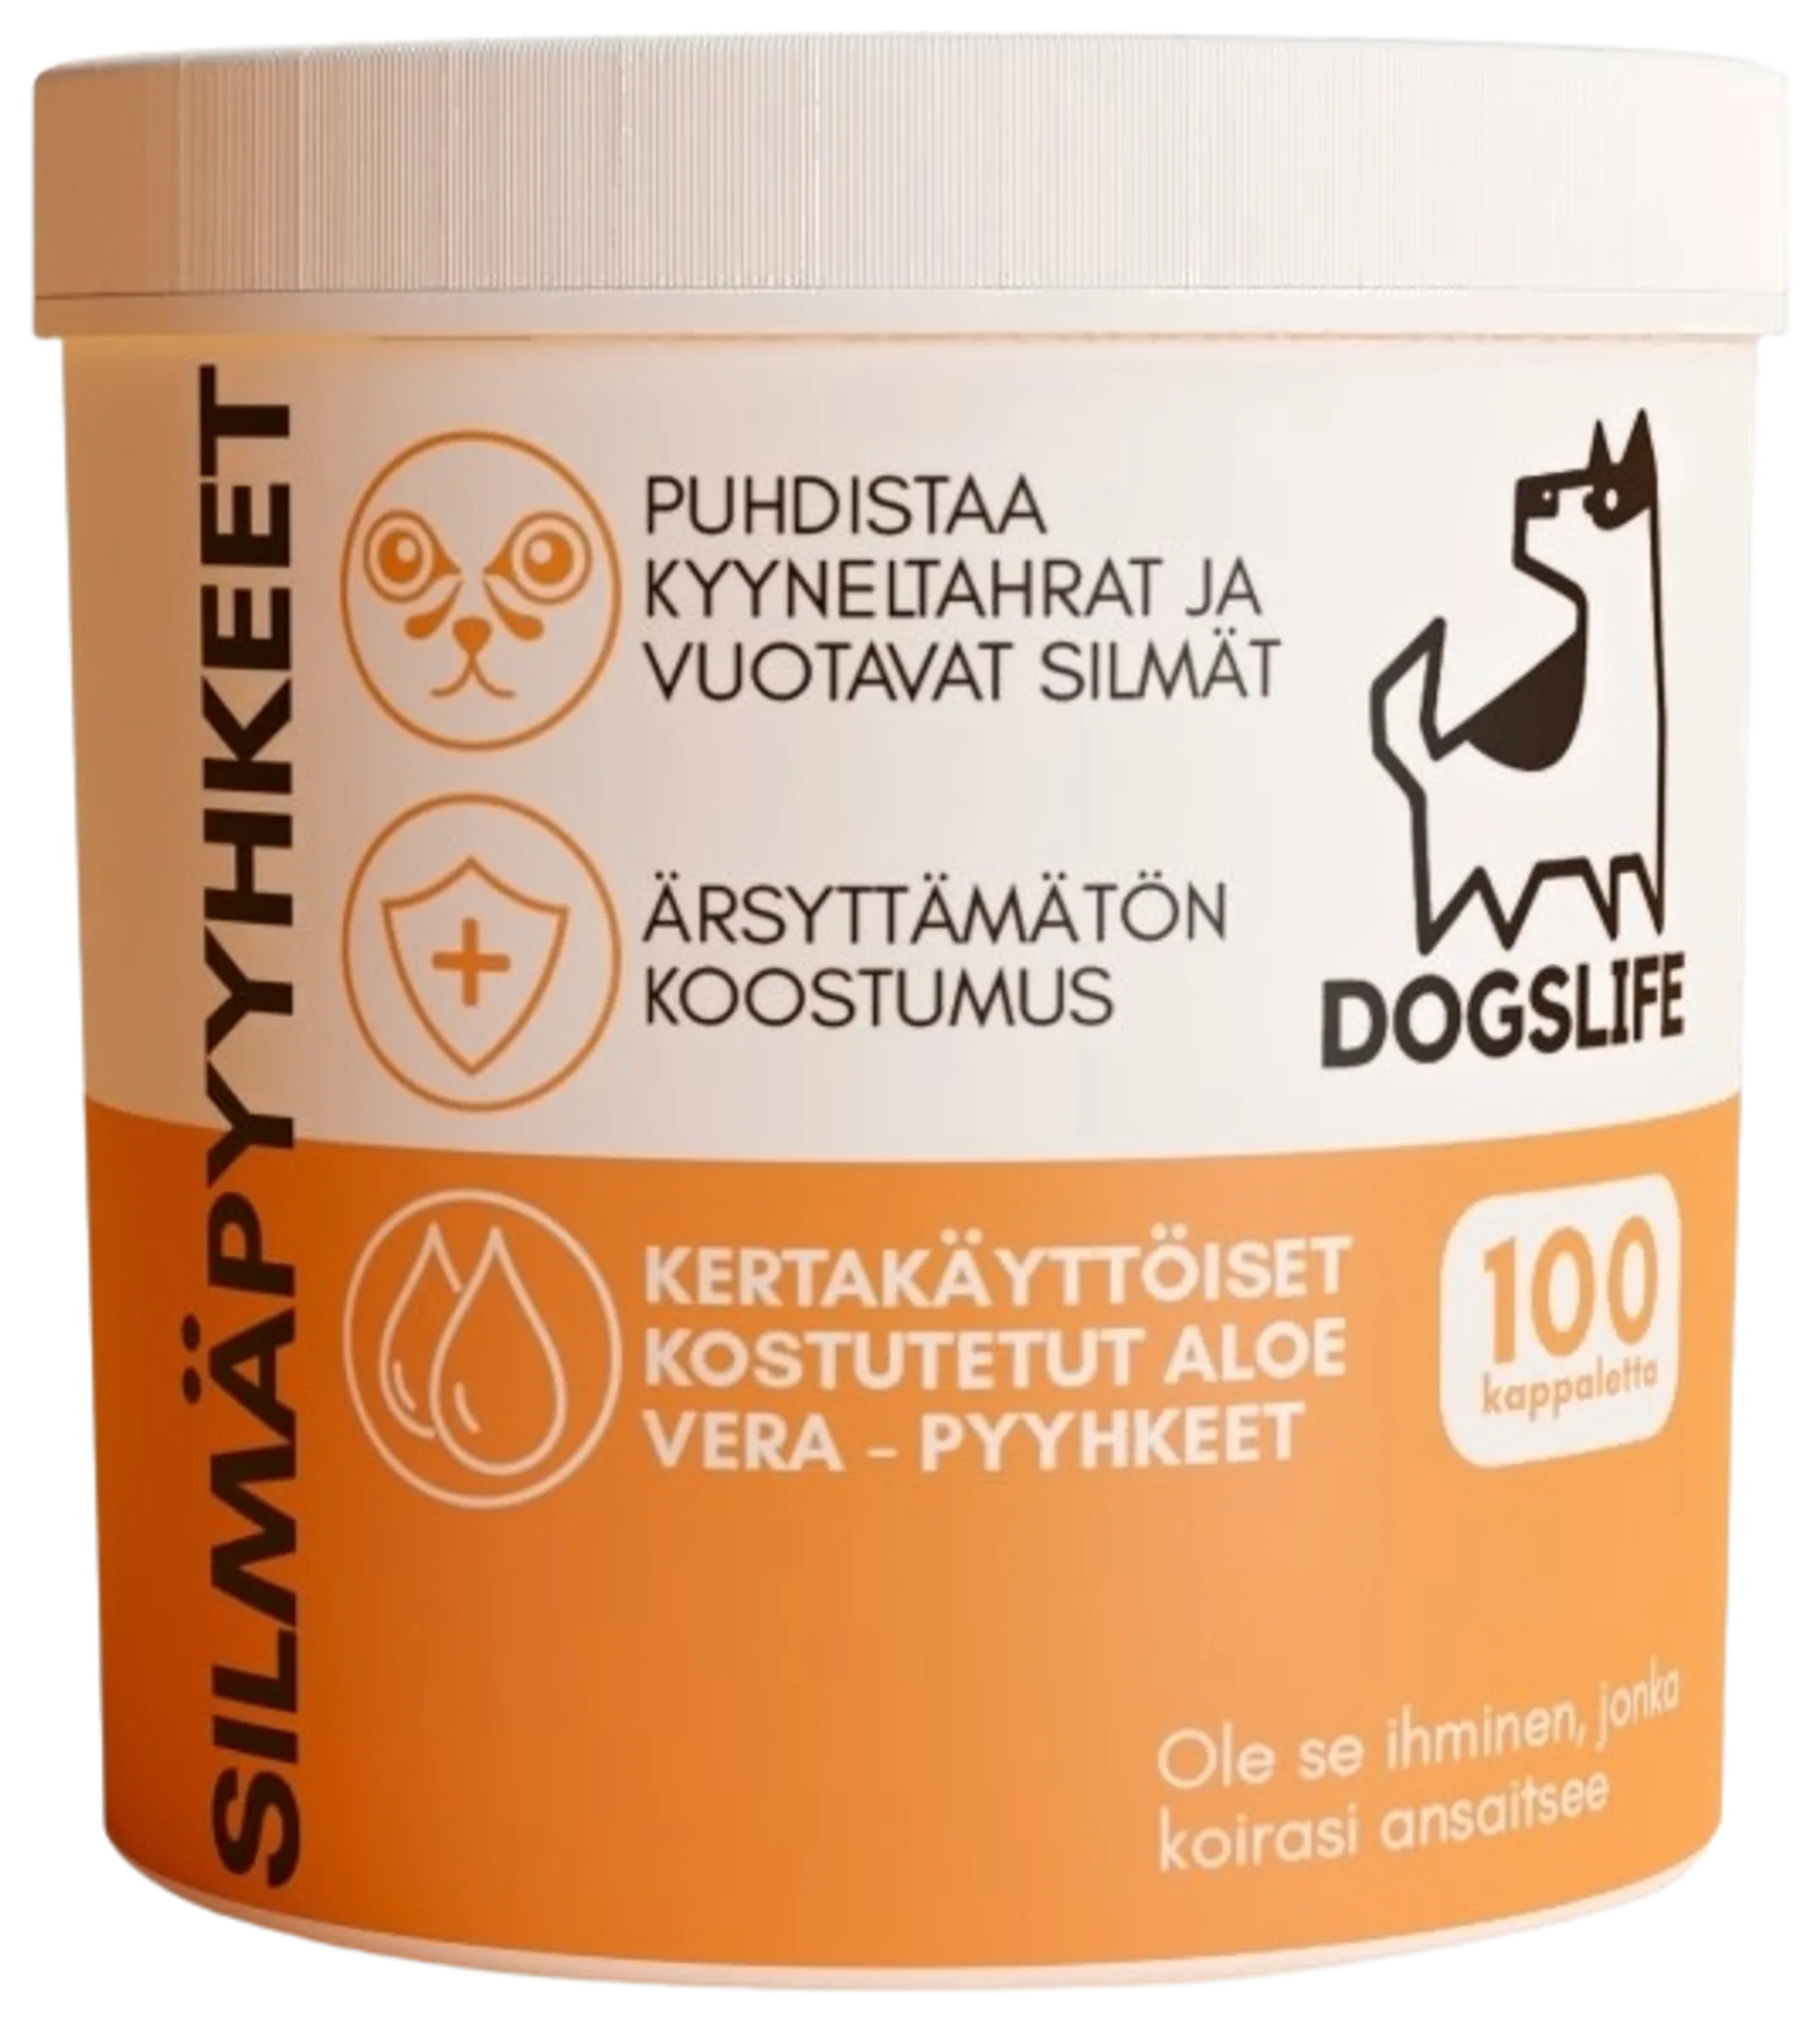 Dogslife silmänpuhdistuslaput 100kpl - 1